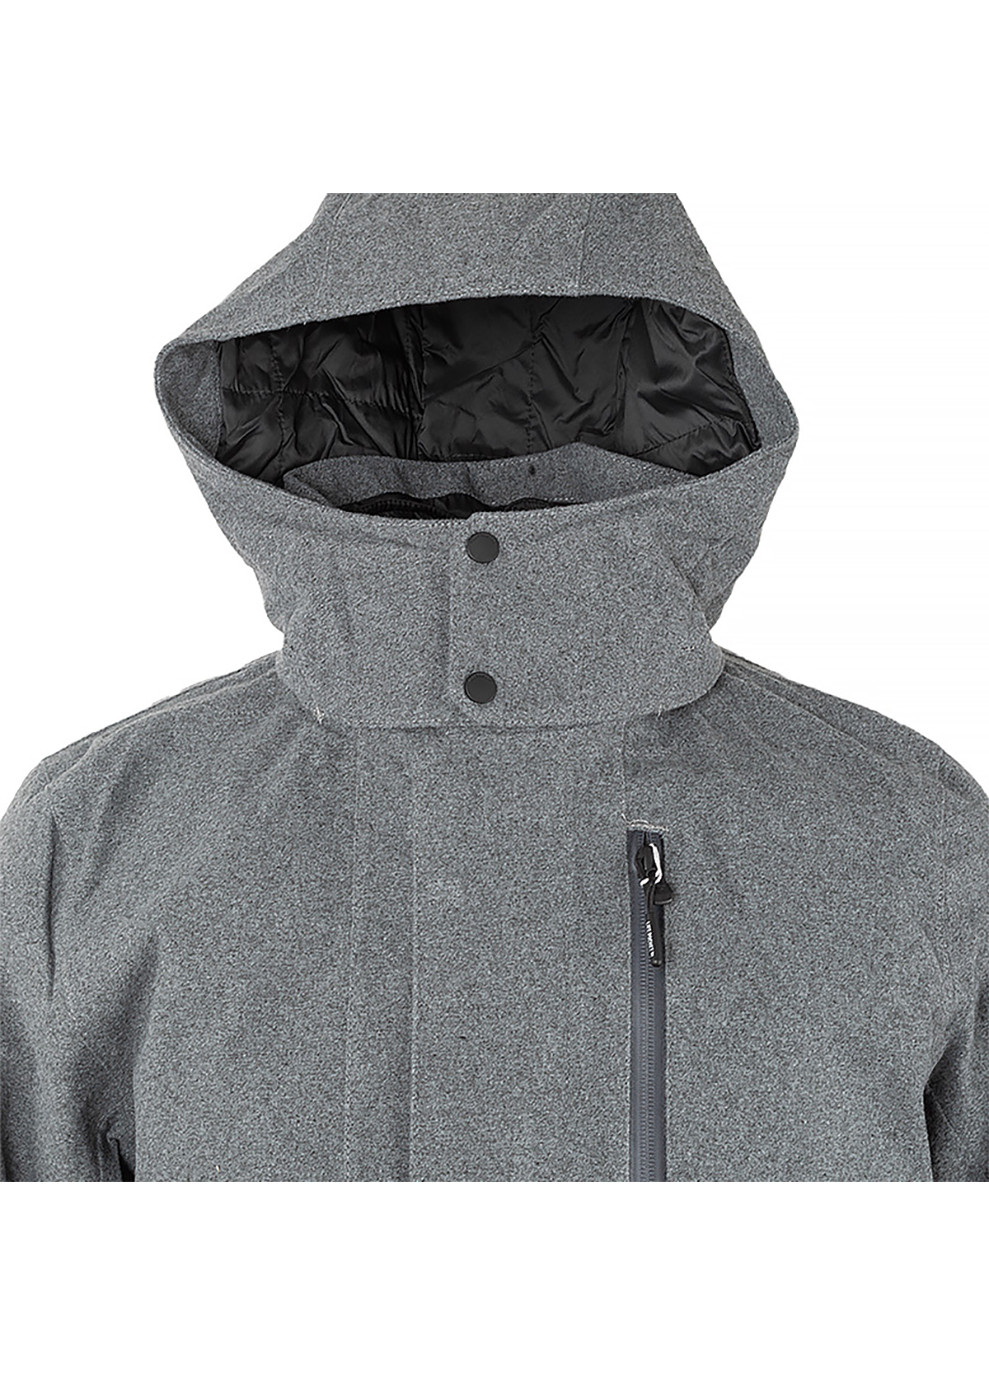 Сіра демісезонна чоловіча куртка urb lab helsinki 3-in-1 coat сірий m (53850-964 m) Helly Hansen